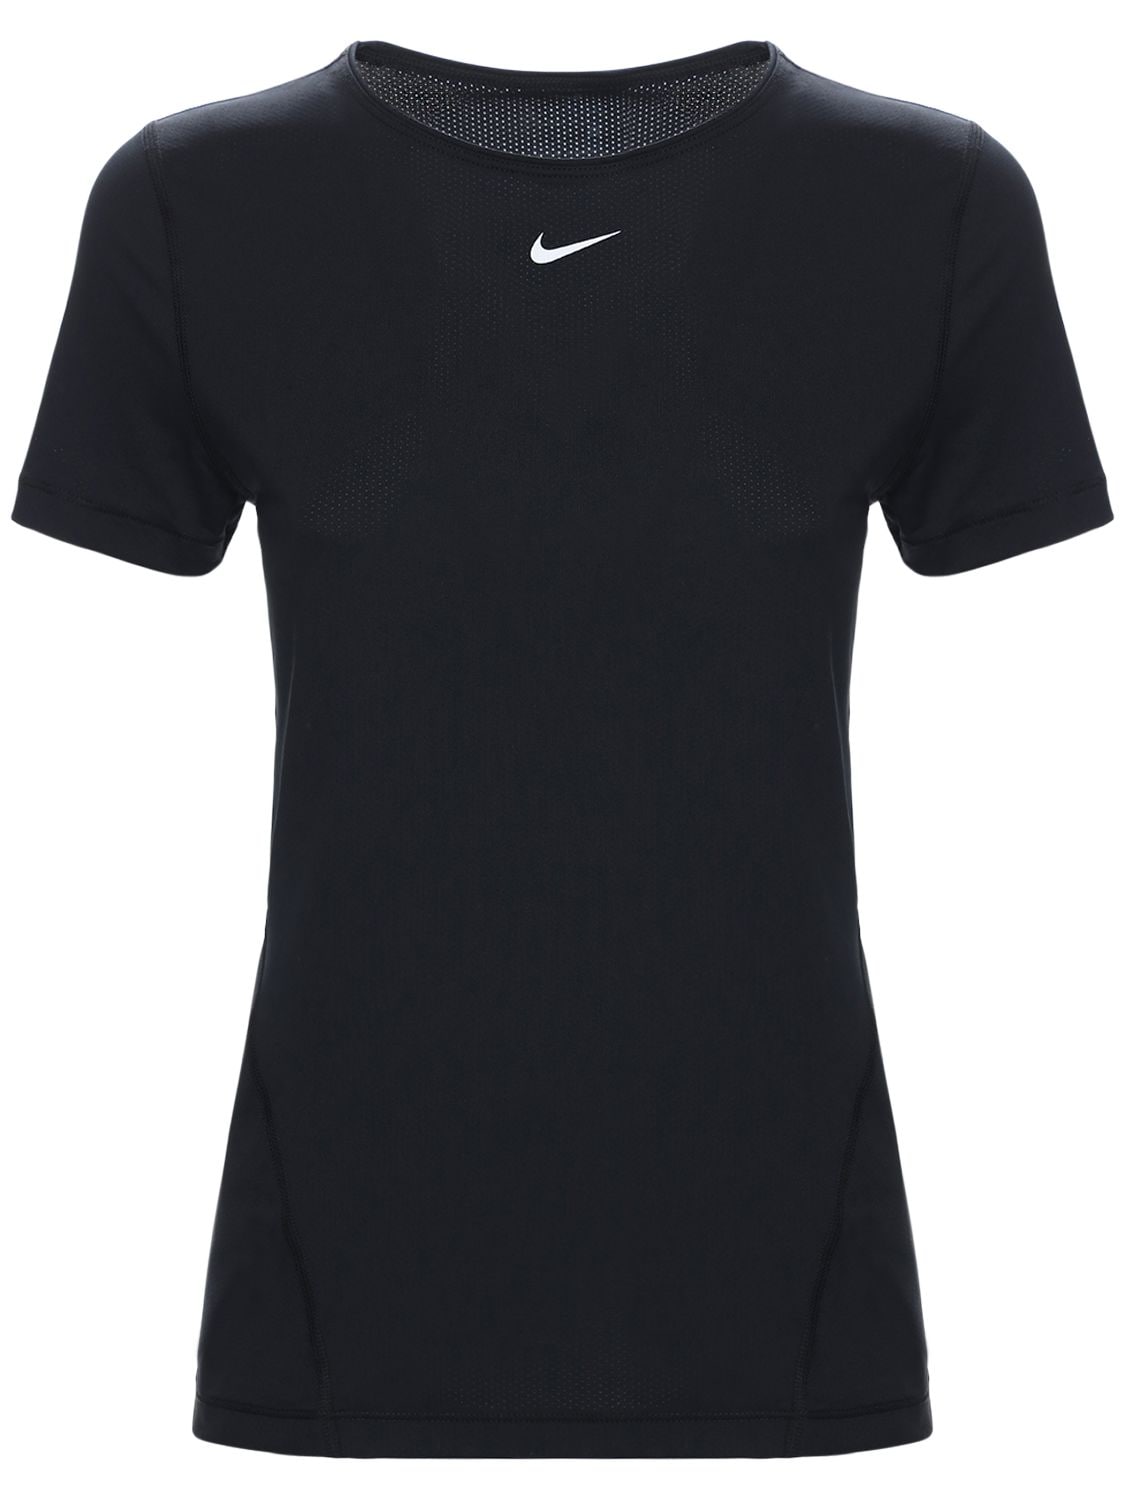 Nike “ Pro Tech Training”t恤 In Black